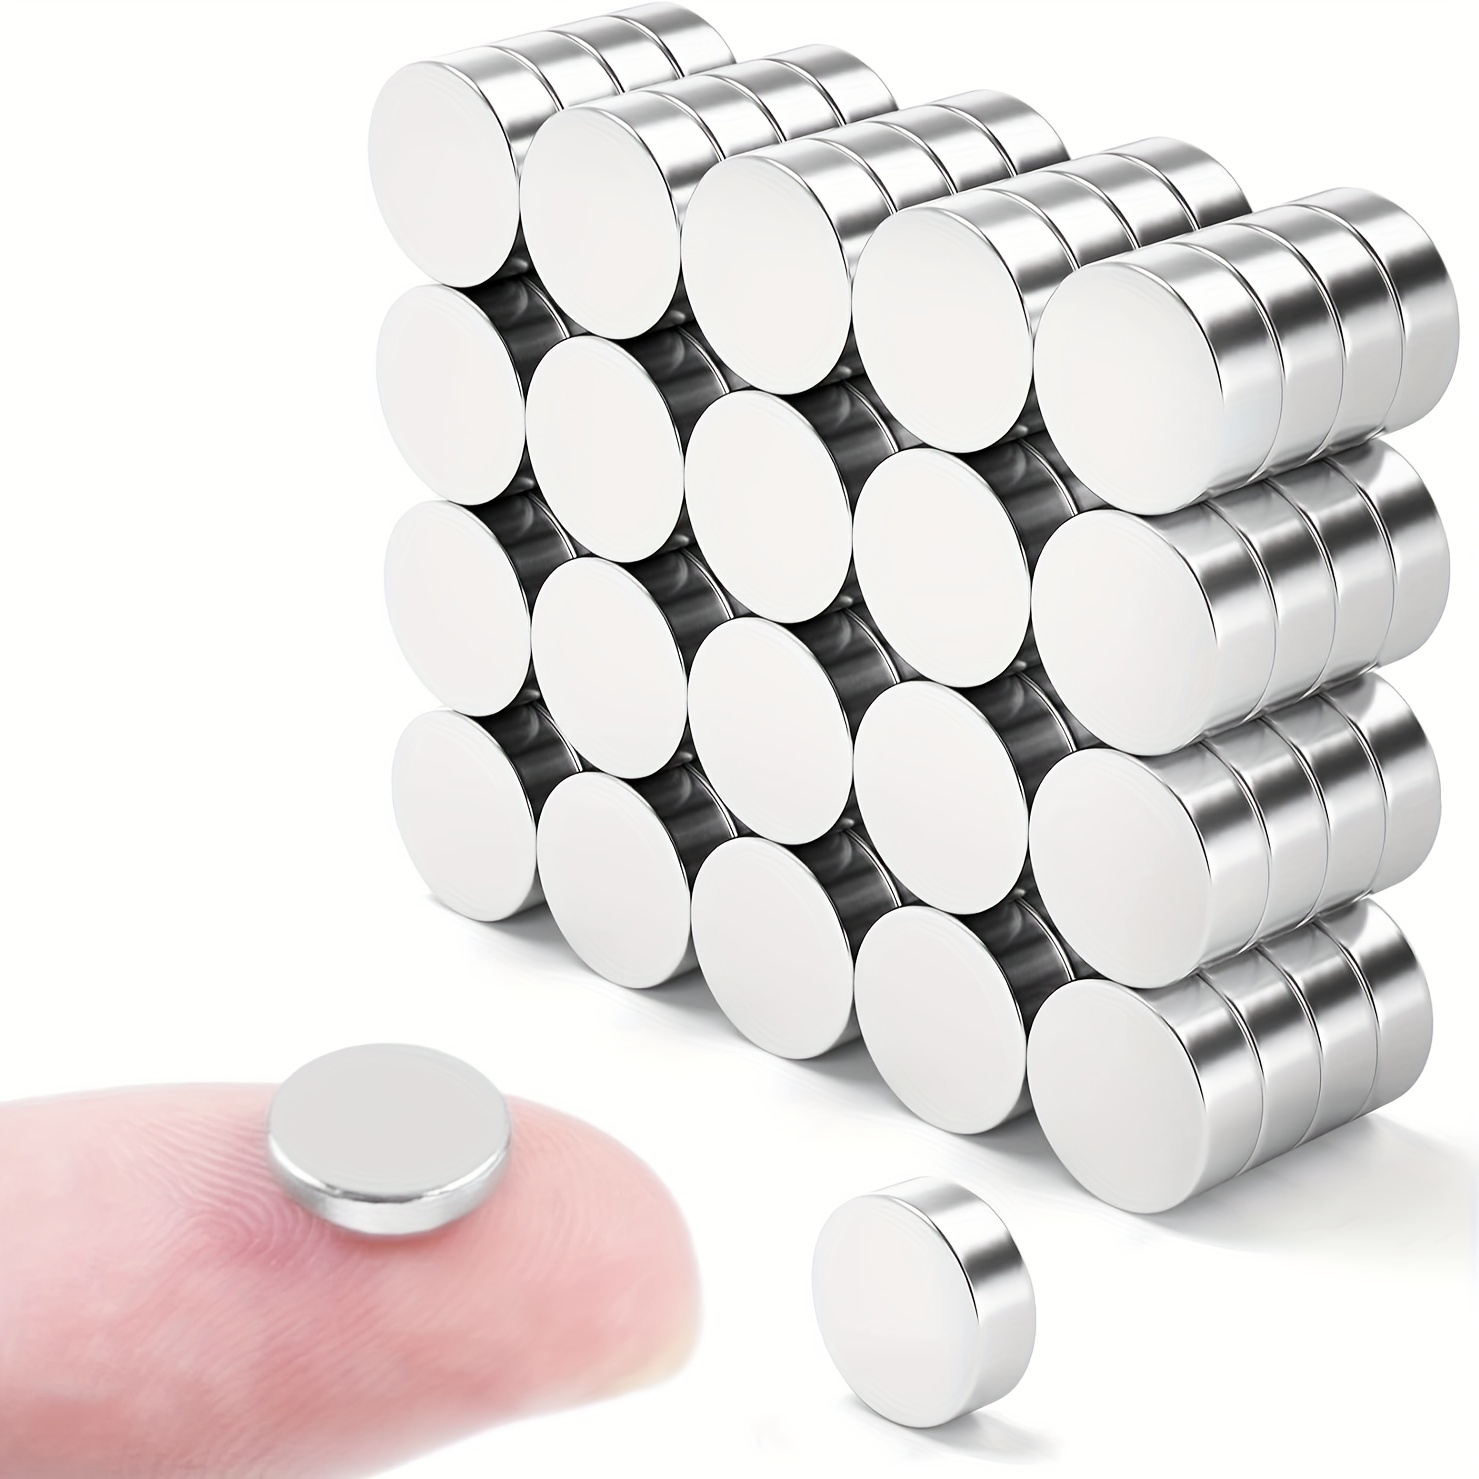 30 Stück Magnete, Kleine Runde Scheibenmagnete Für Bastelarbeiten